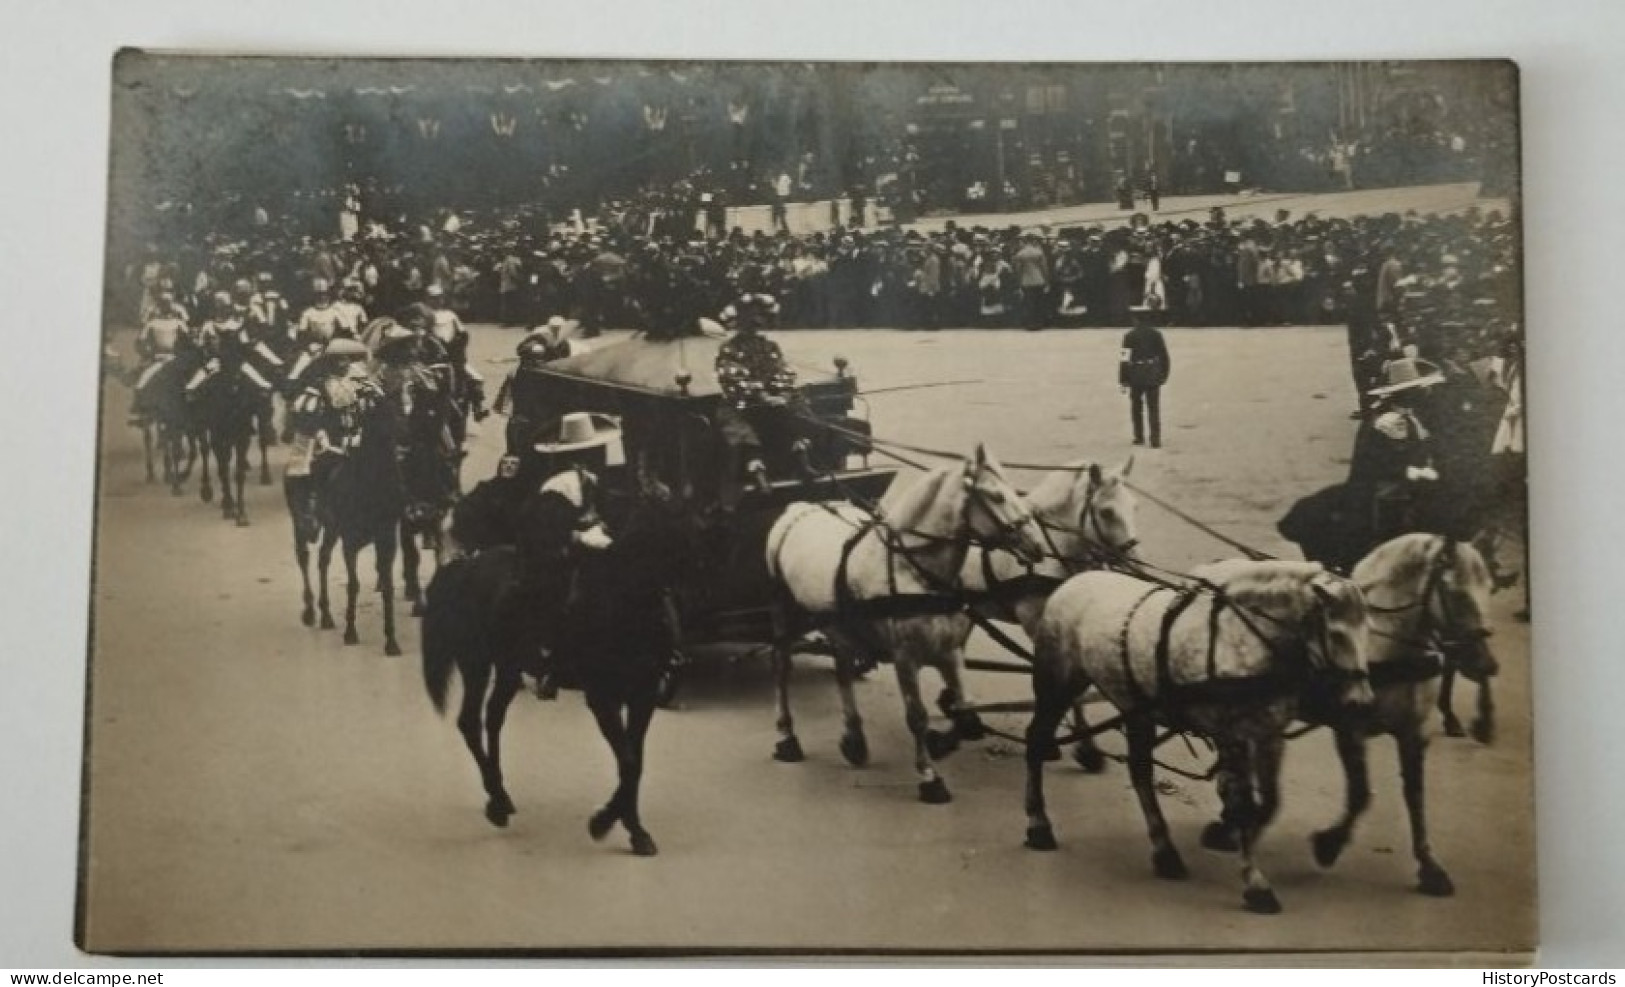 Hamburg, 16. Deutsches Bundesschiessen, Kutsche, Parade, 1909 - Mitte